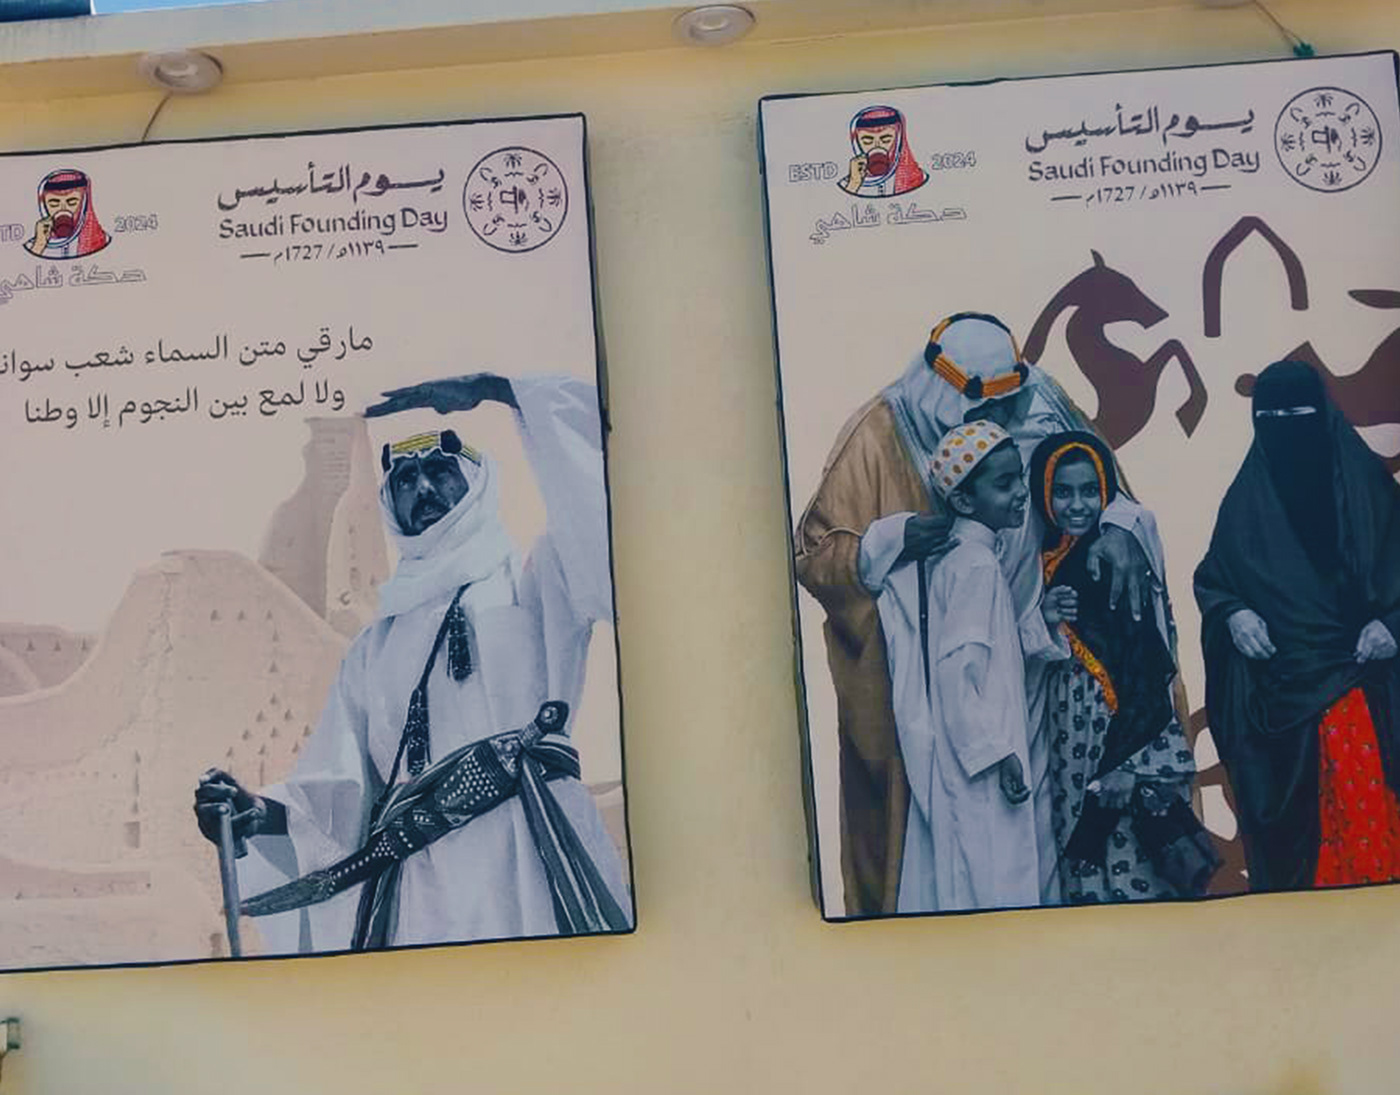 يوم التأسيس يوم التأسيس السعودي Saudi Arabia Advertising  sticker شاي saudi founding day makkah شاهي يوم التأسيس يوم بدينا